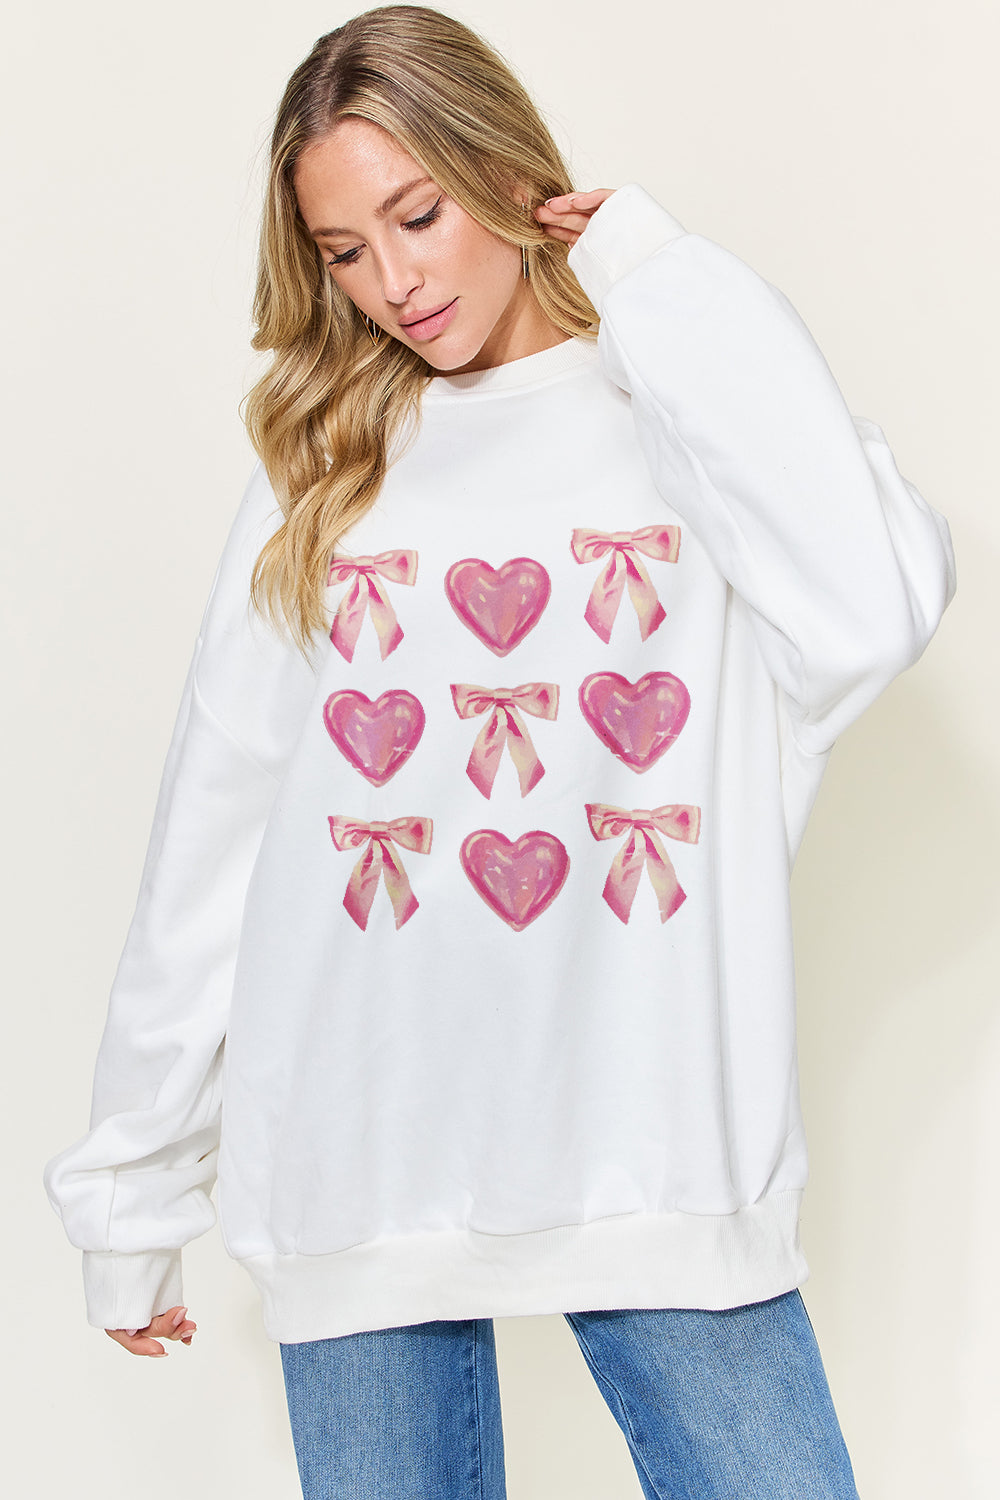 Bow & Heart Sweatshirt